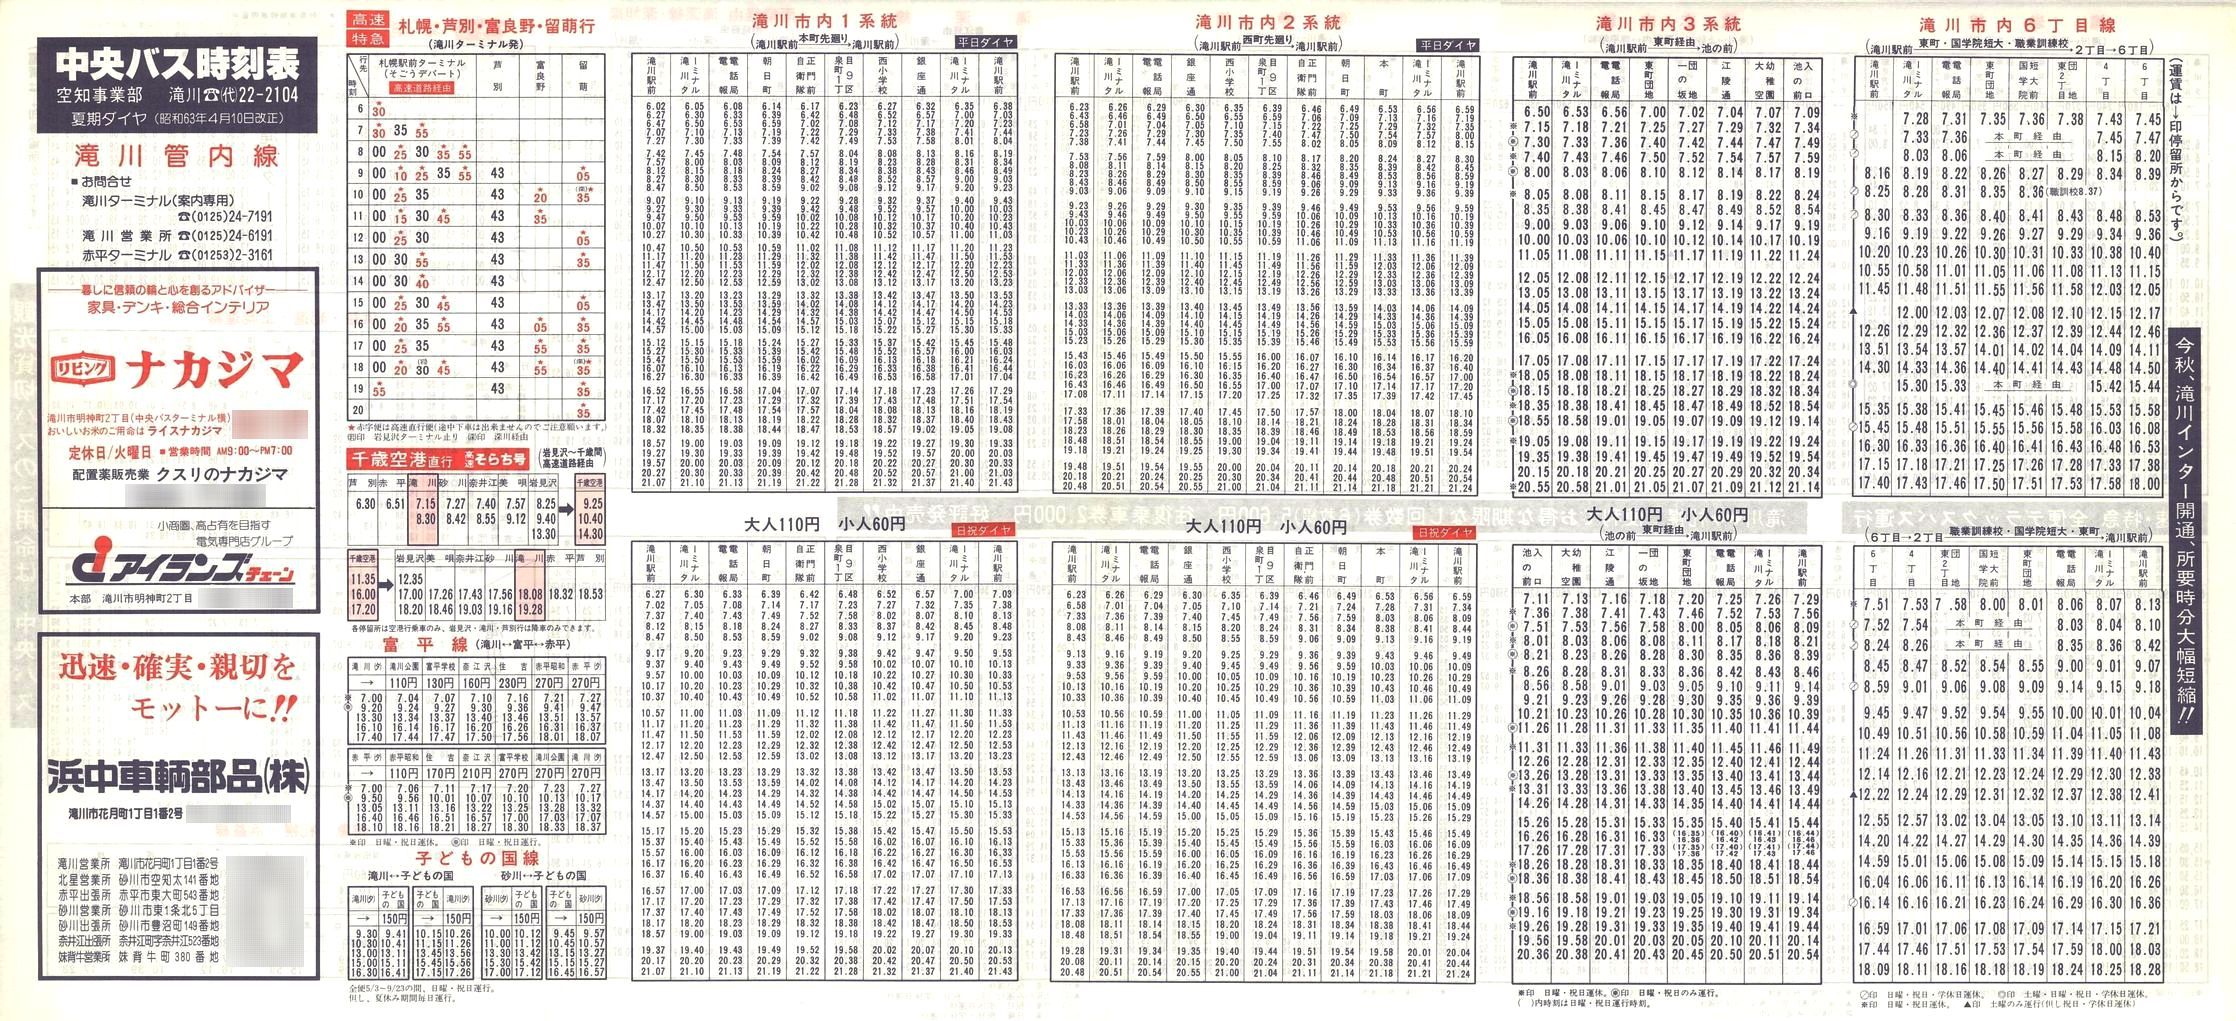 1988-04-10改正_北海道中央バス(空知)_滝川管内線時刻表表面